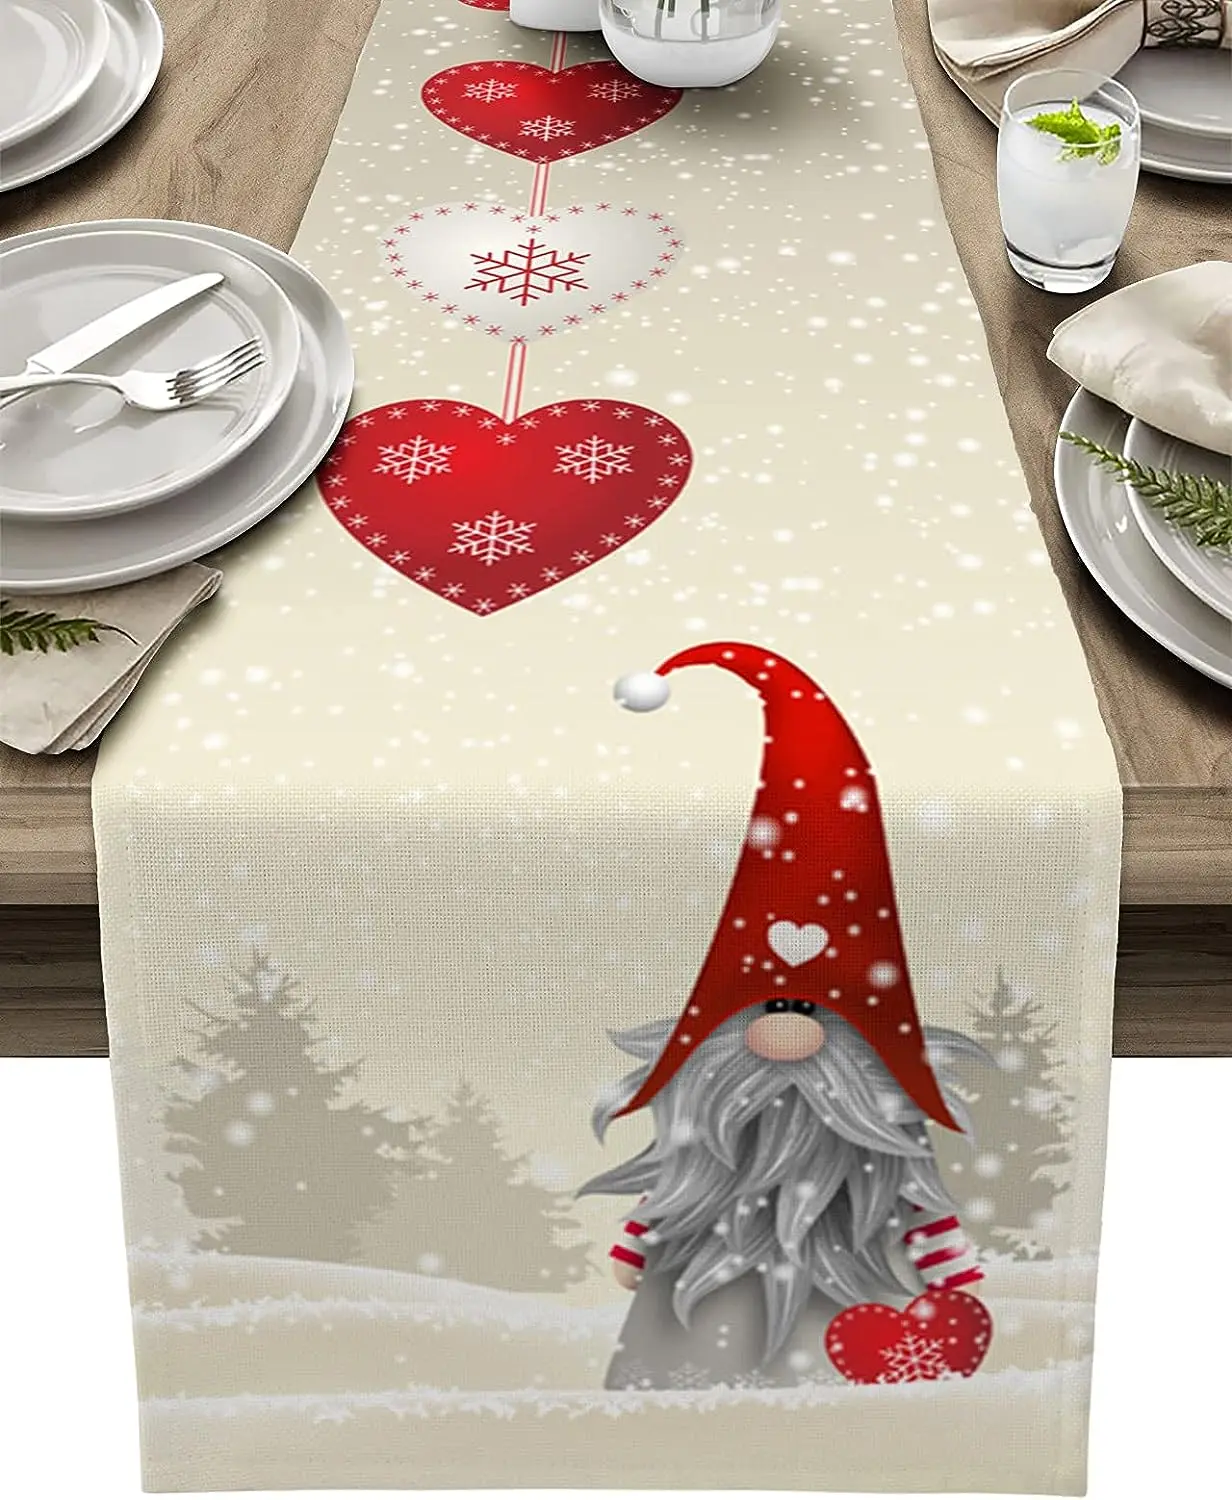 

Рождественские снежинки гном льняные скатерти для стола комод шарфы декор для стола фермерские скатерти для обеденного стола Рождественское украшение